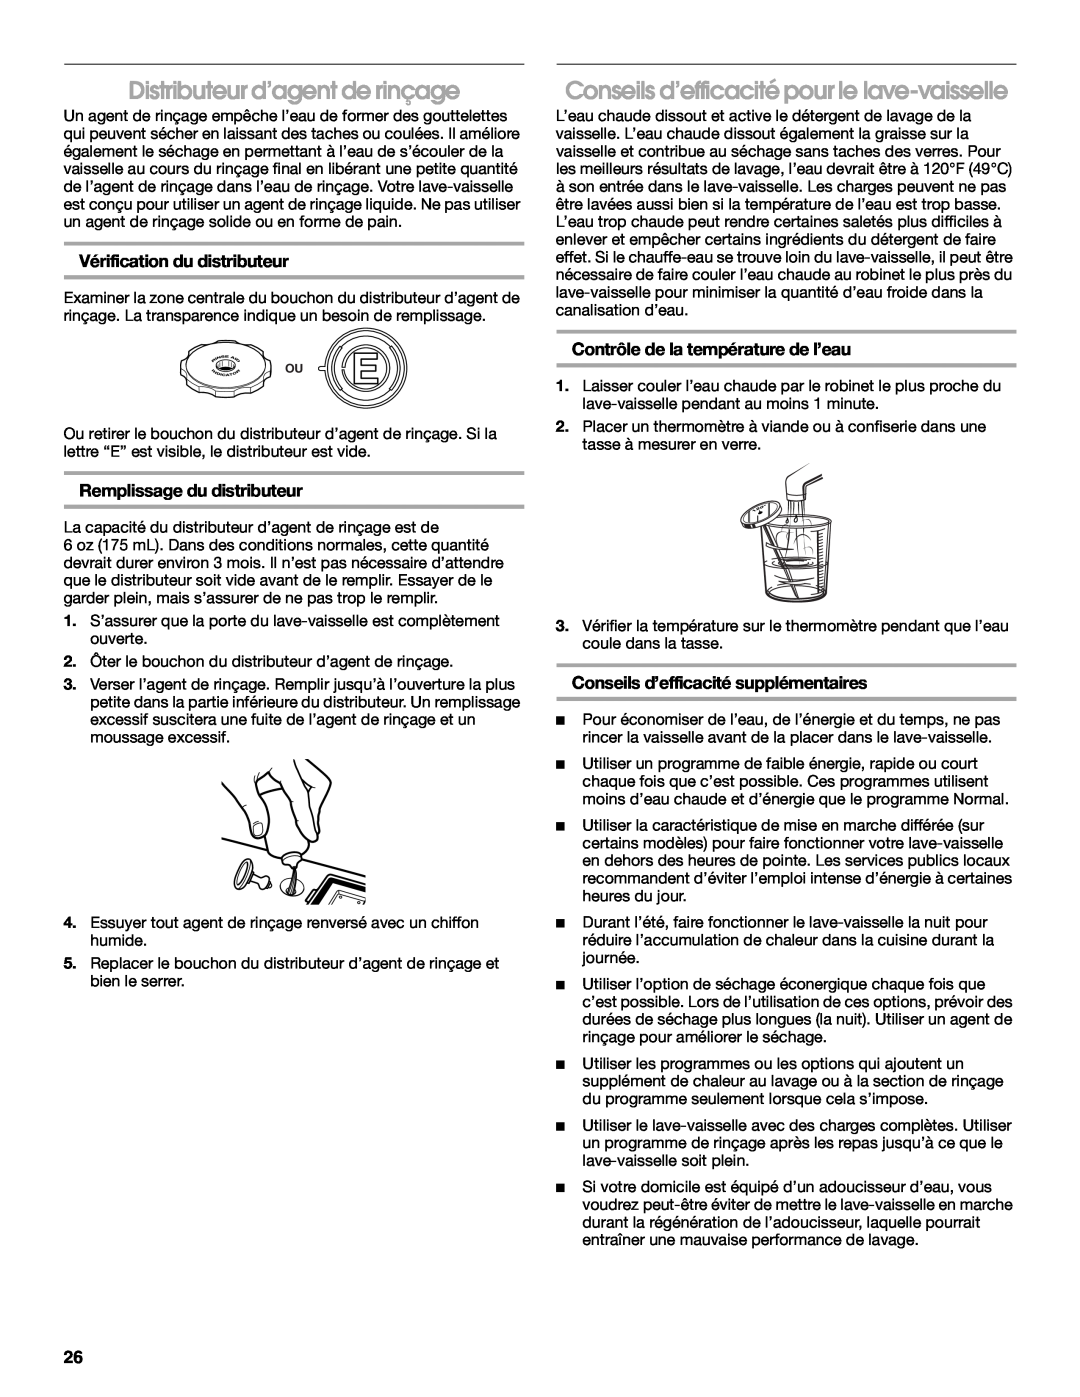 Whirlpool RUD6050R manual Distributeur d’agent de rinçage, Conseils d’efficacité pour le lave-vaisselle 